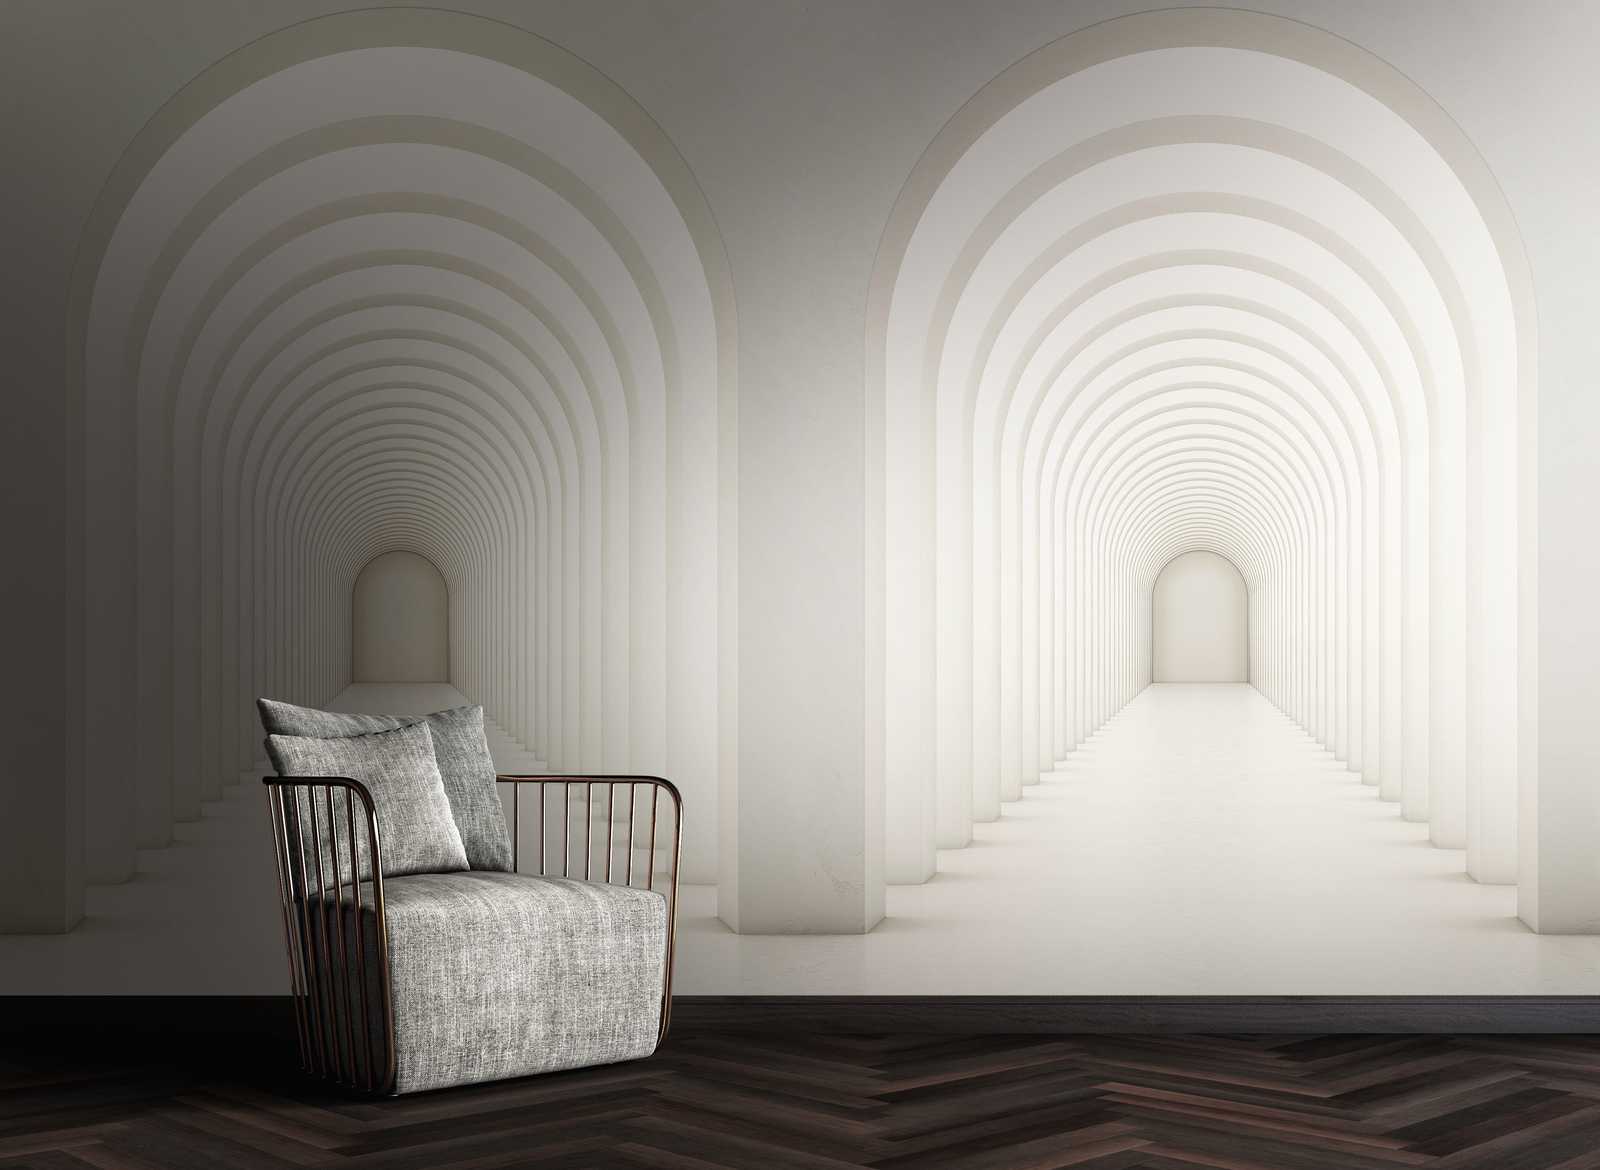             Behang nieuwigheid - 3D motief behang ronde boog moderne architectuur
        